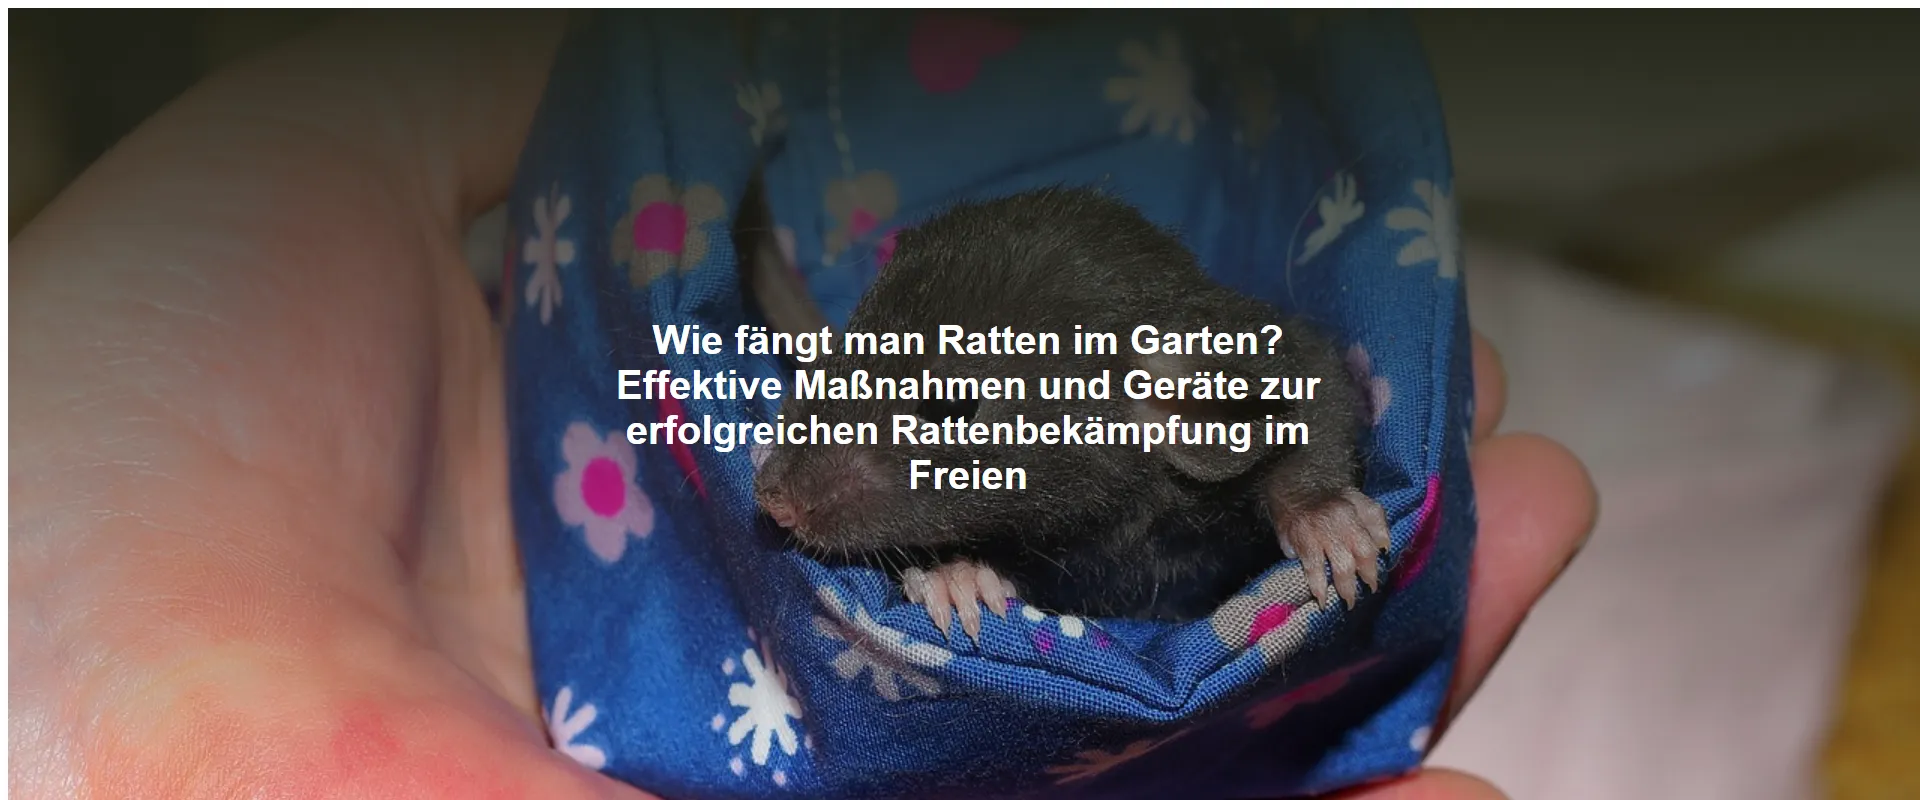 Wie fängt man Ratten im Garten? Effektive Maßnahmen und Geräte zur erfolgreichen Rattenbekämpfung im Freien